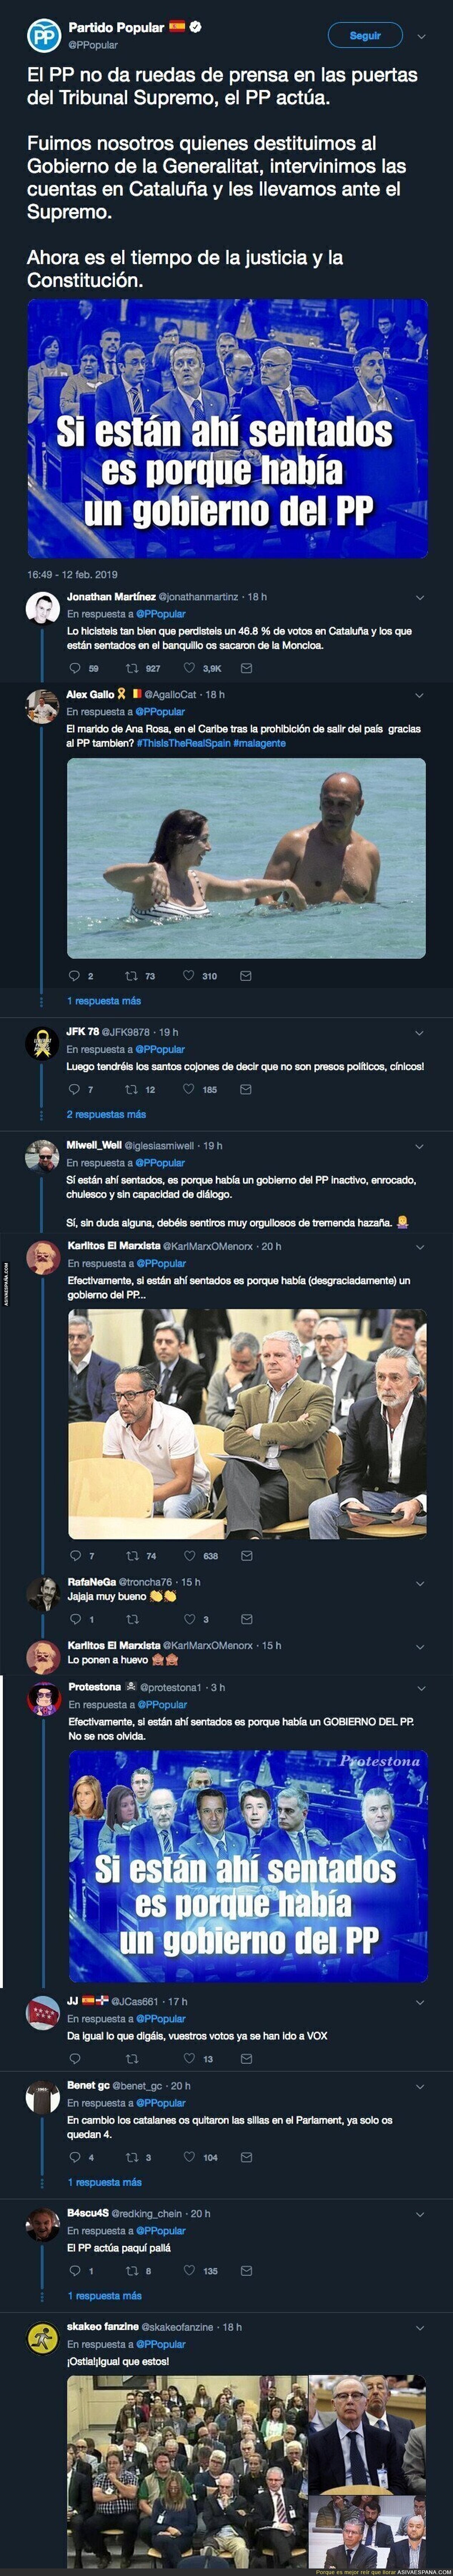 El Partido Popular y su polémico tuit sobre los presos políticos catalanes y evidenciando la falta de separación de poderes